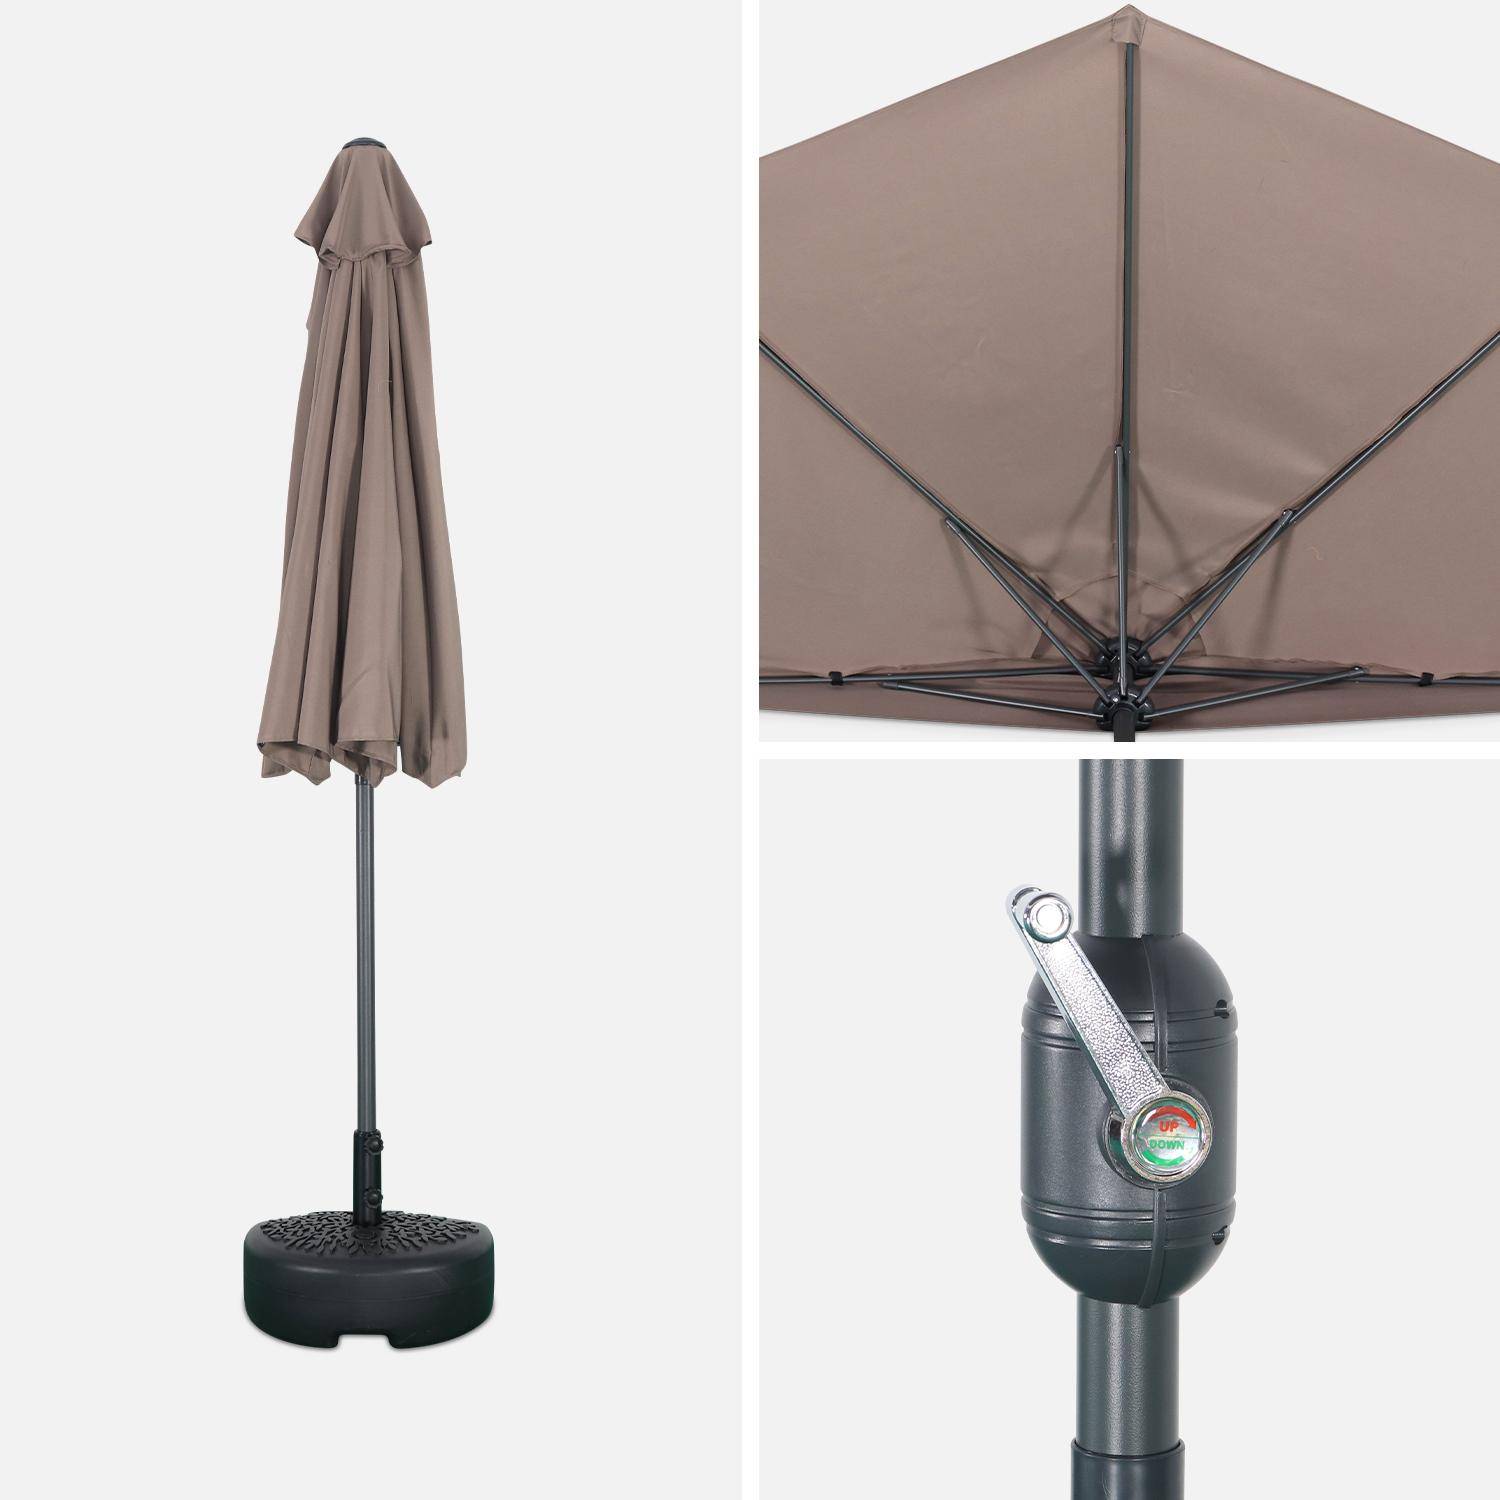  Parasol para balcón Ø250cm  – CALVI – Pequeño parasol recto, mástil en aluminio con manivela, tela color pardo  Photo5